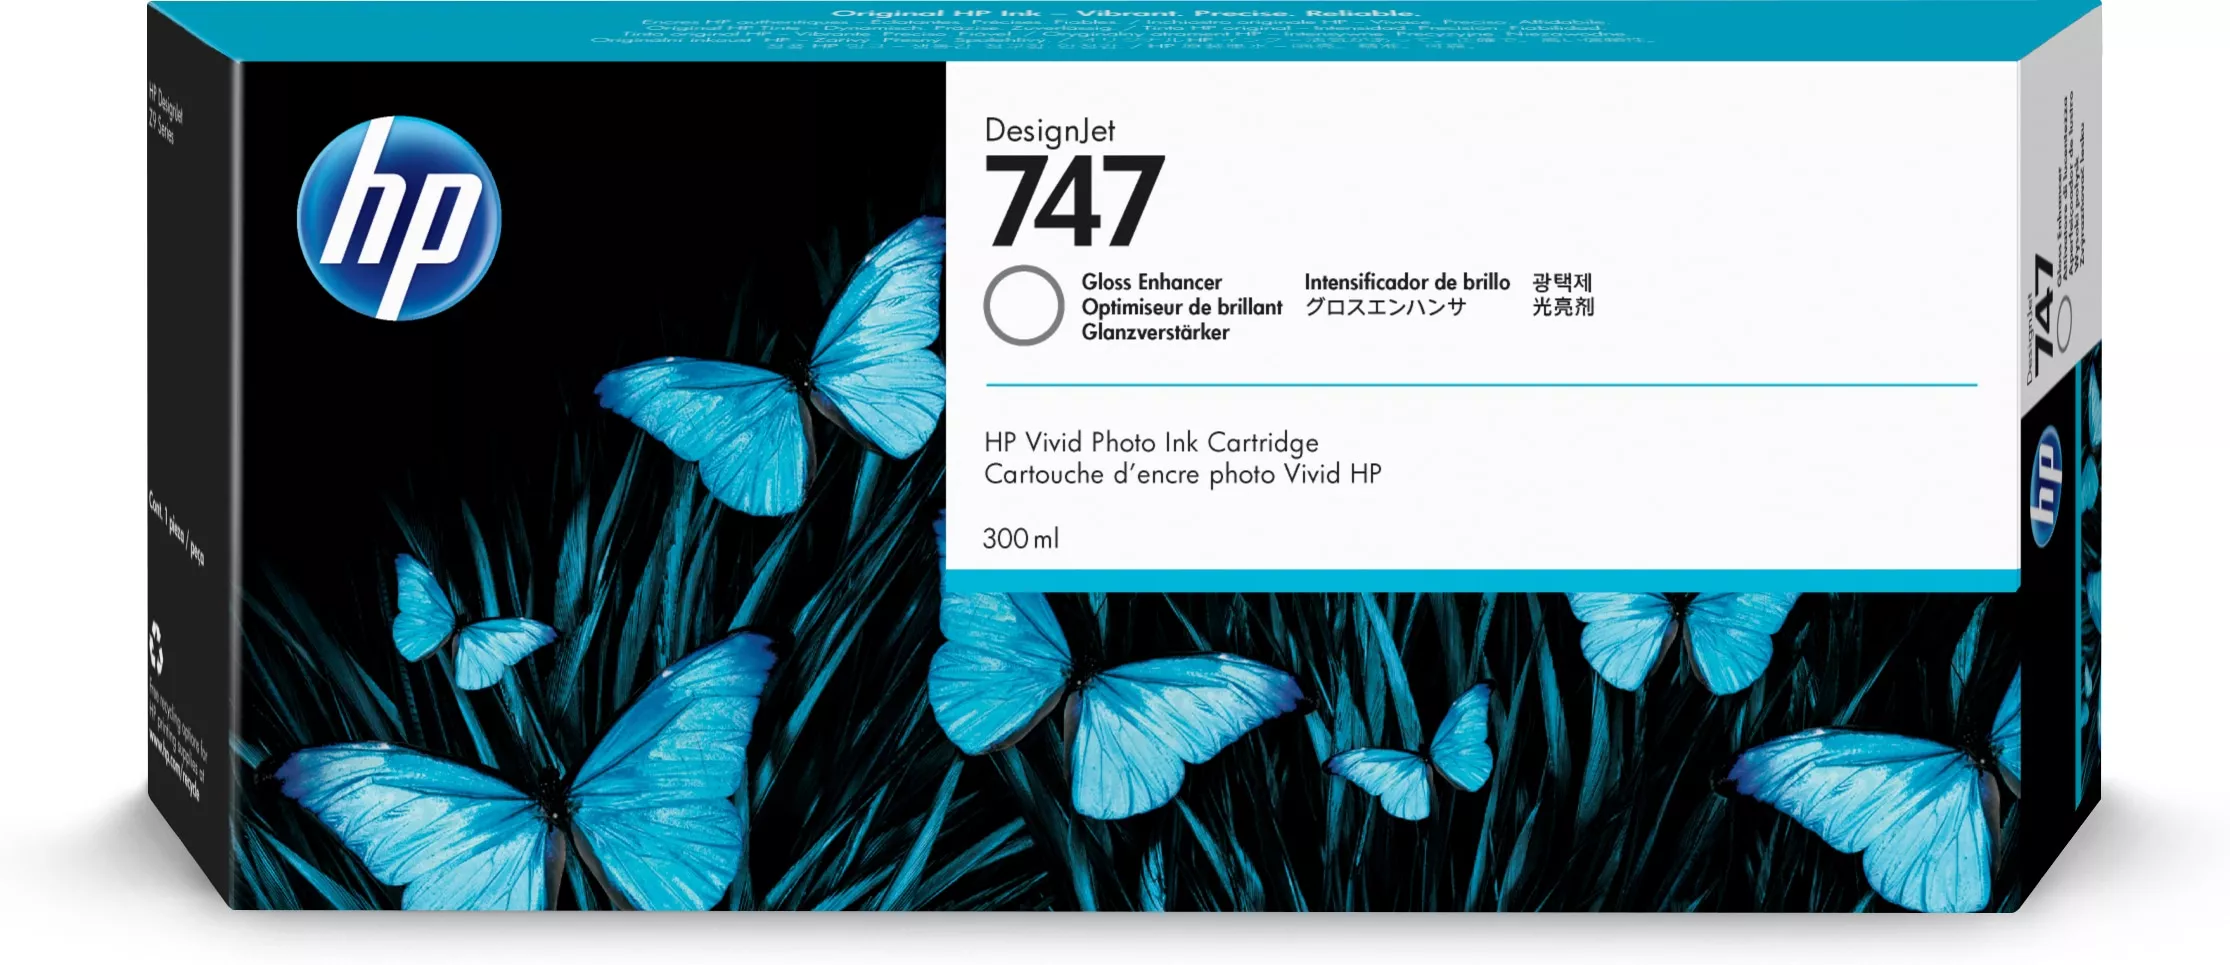 Vente HP 747 300-ml Gloss Enhancer Cartridge HP au meilleur prix - visuel 2